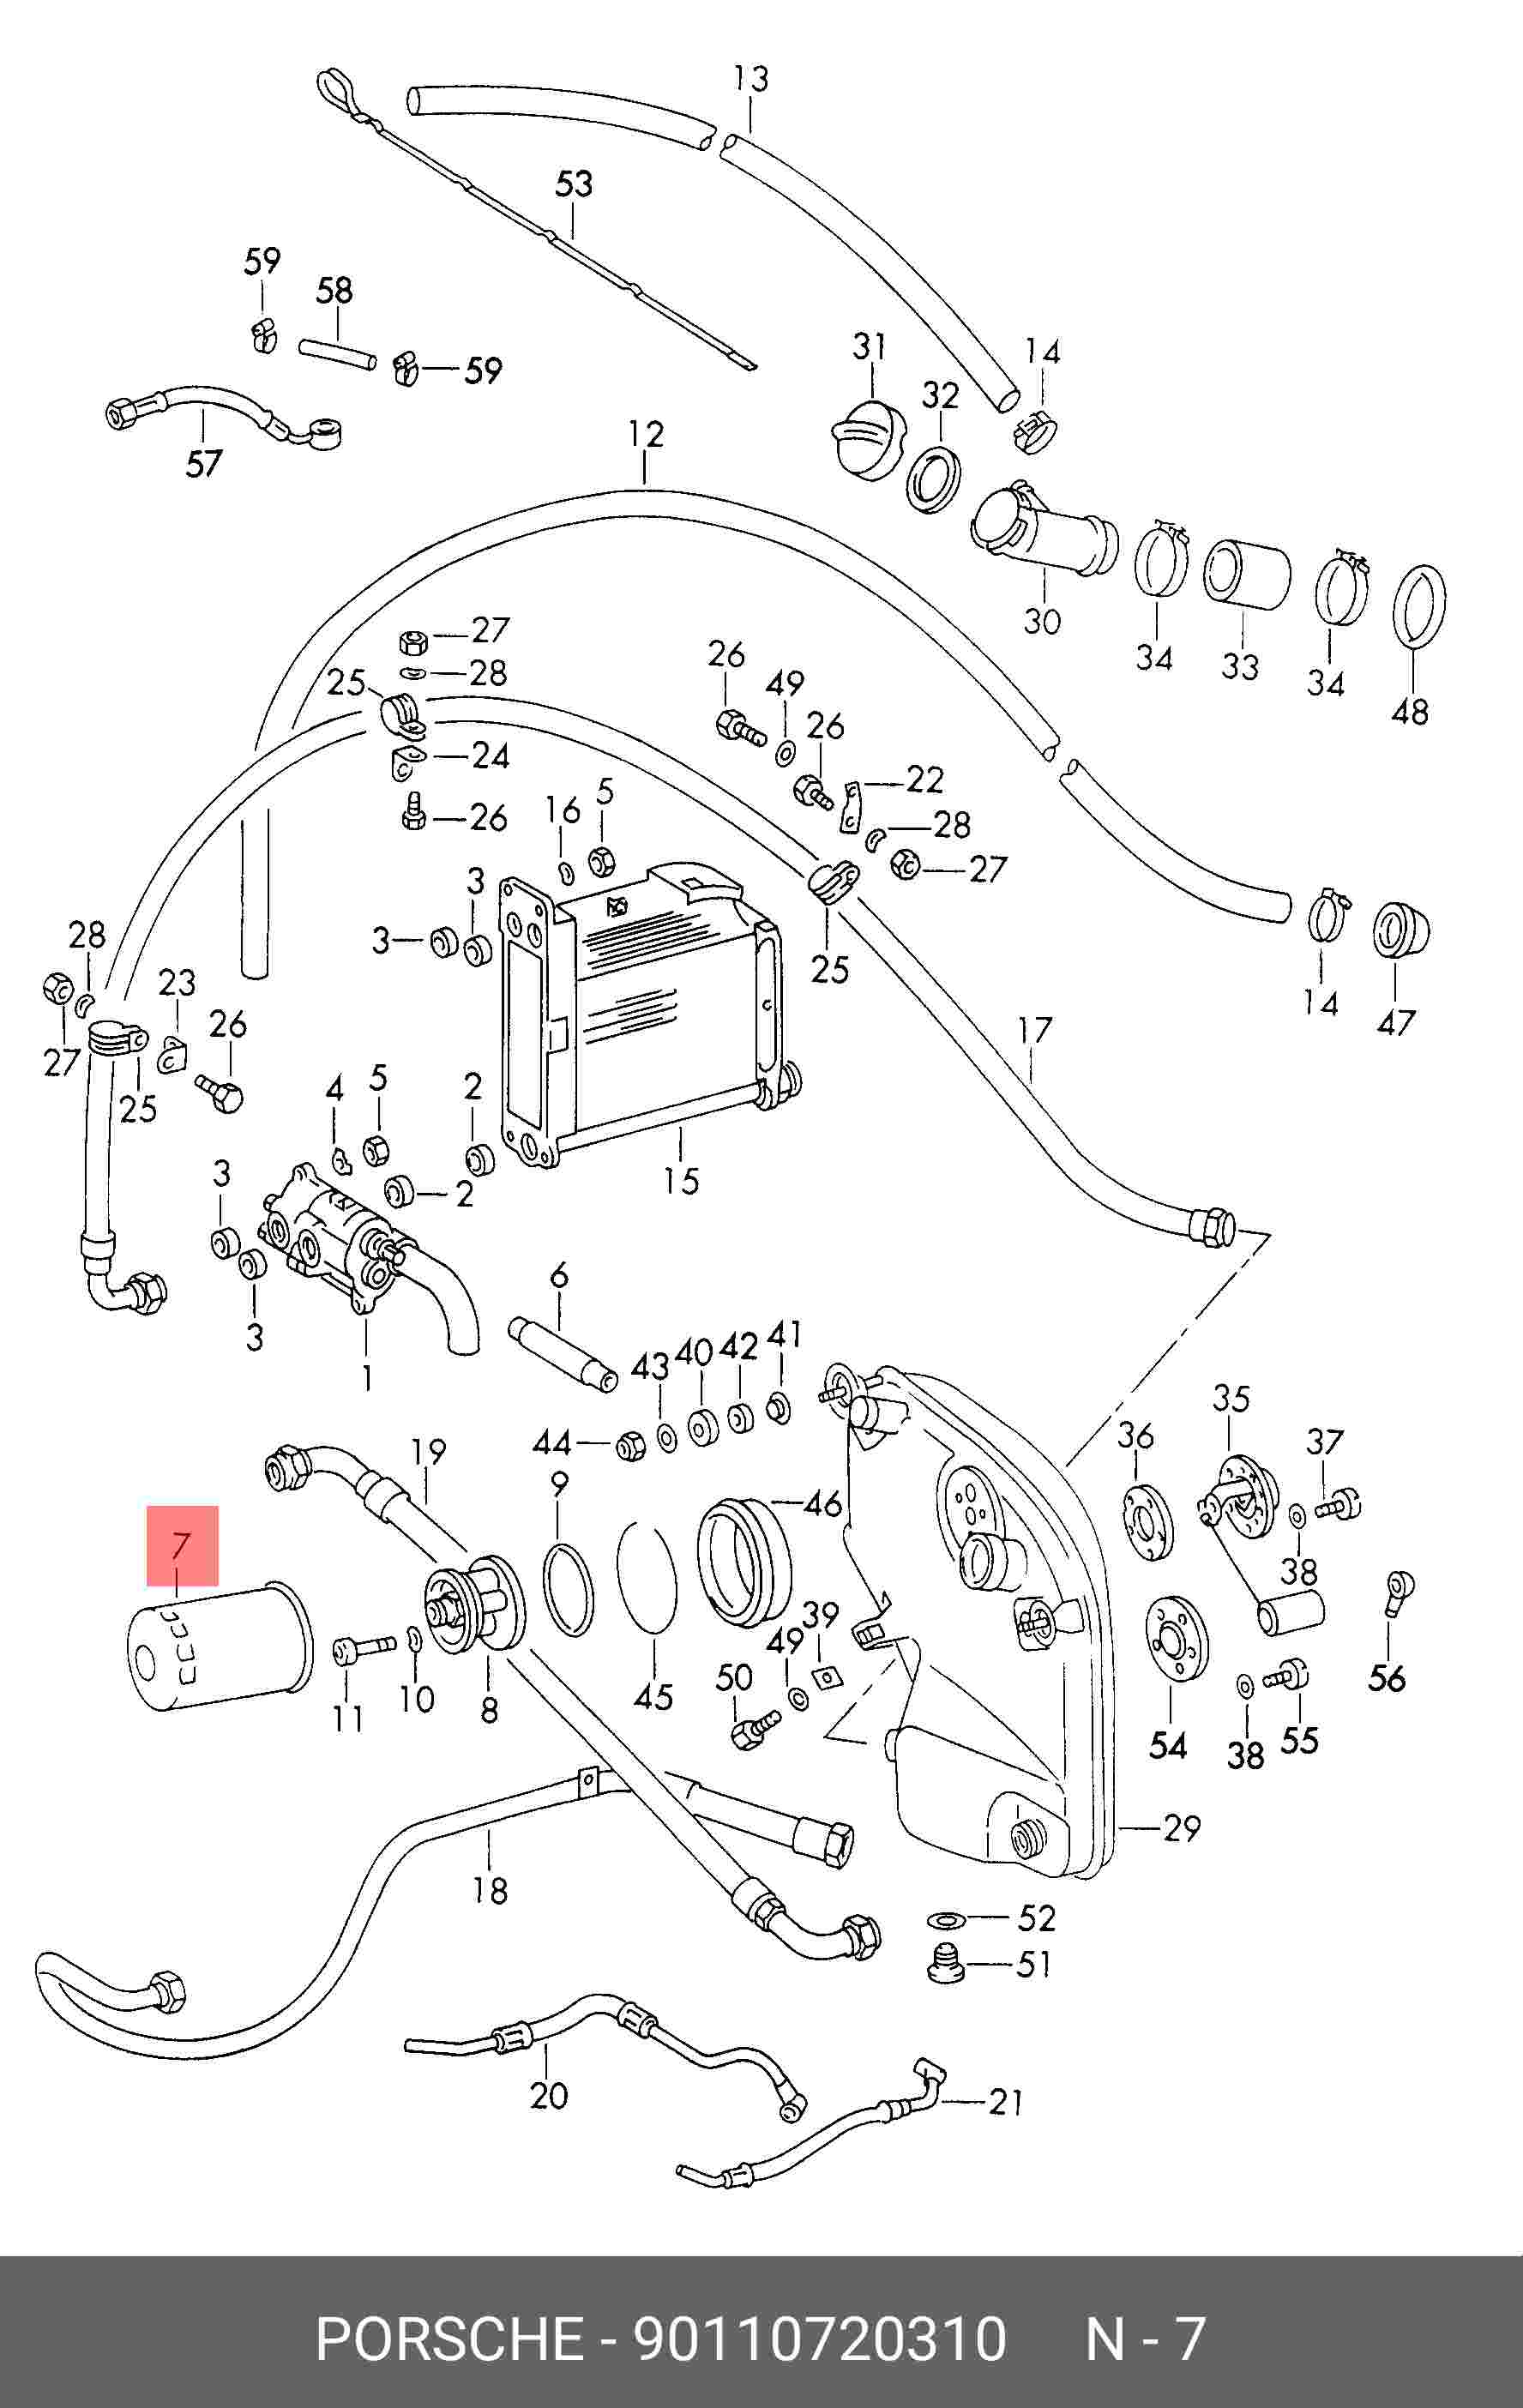 Фильтр масляный двигателя - Porsche 90110720310